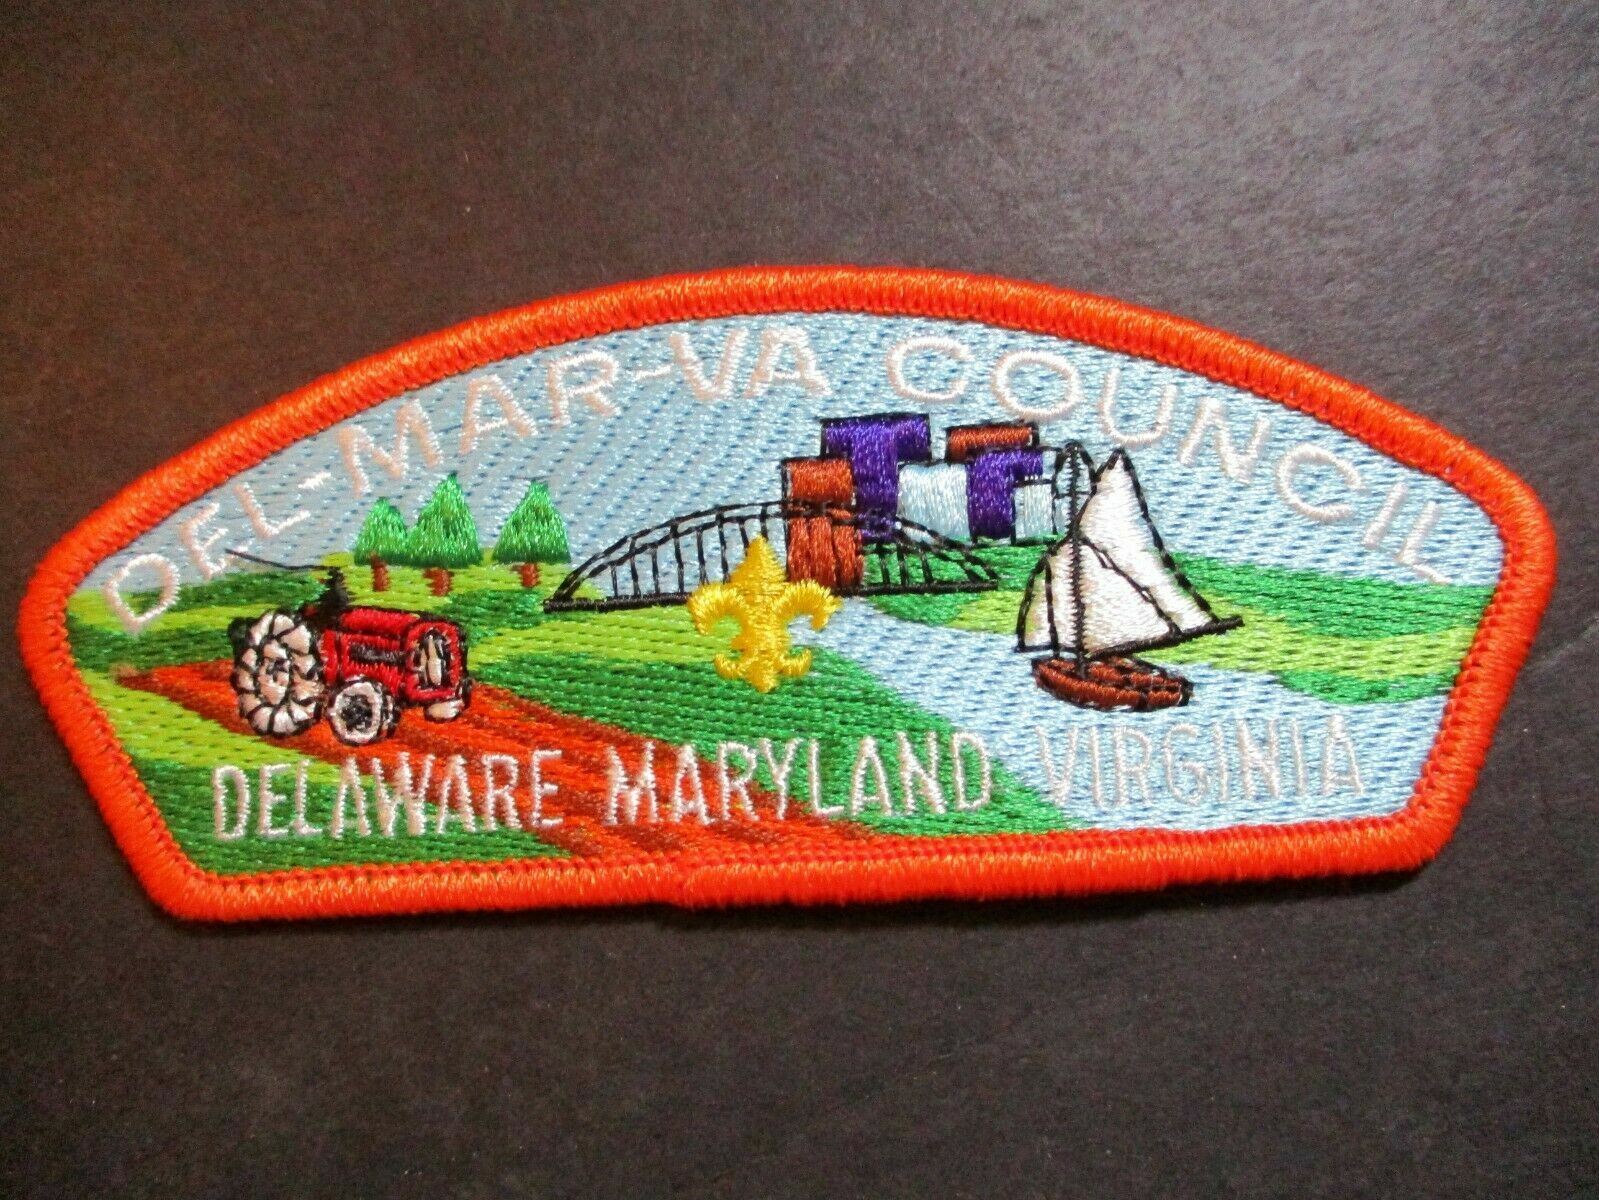 DEL-MAR-VA Council Delaware Maryland Virginia BSA CSP council shoulder strip